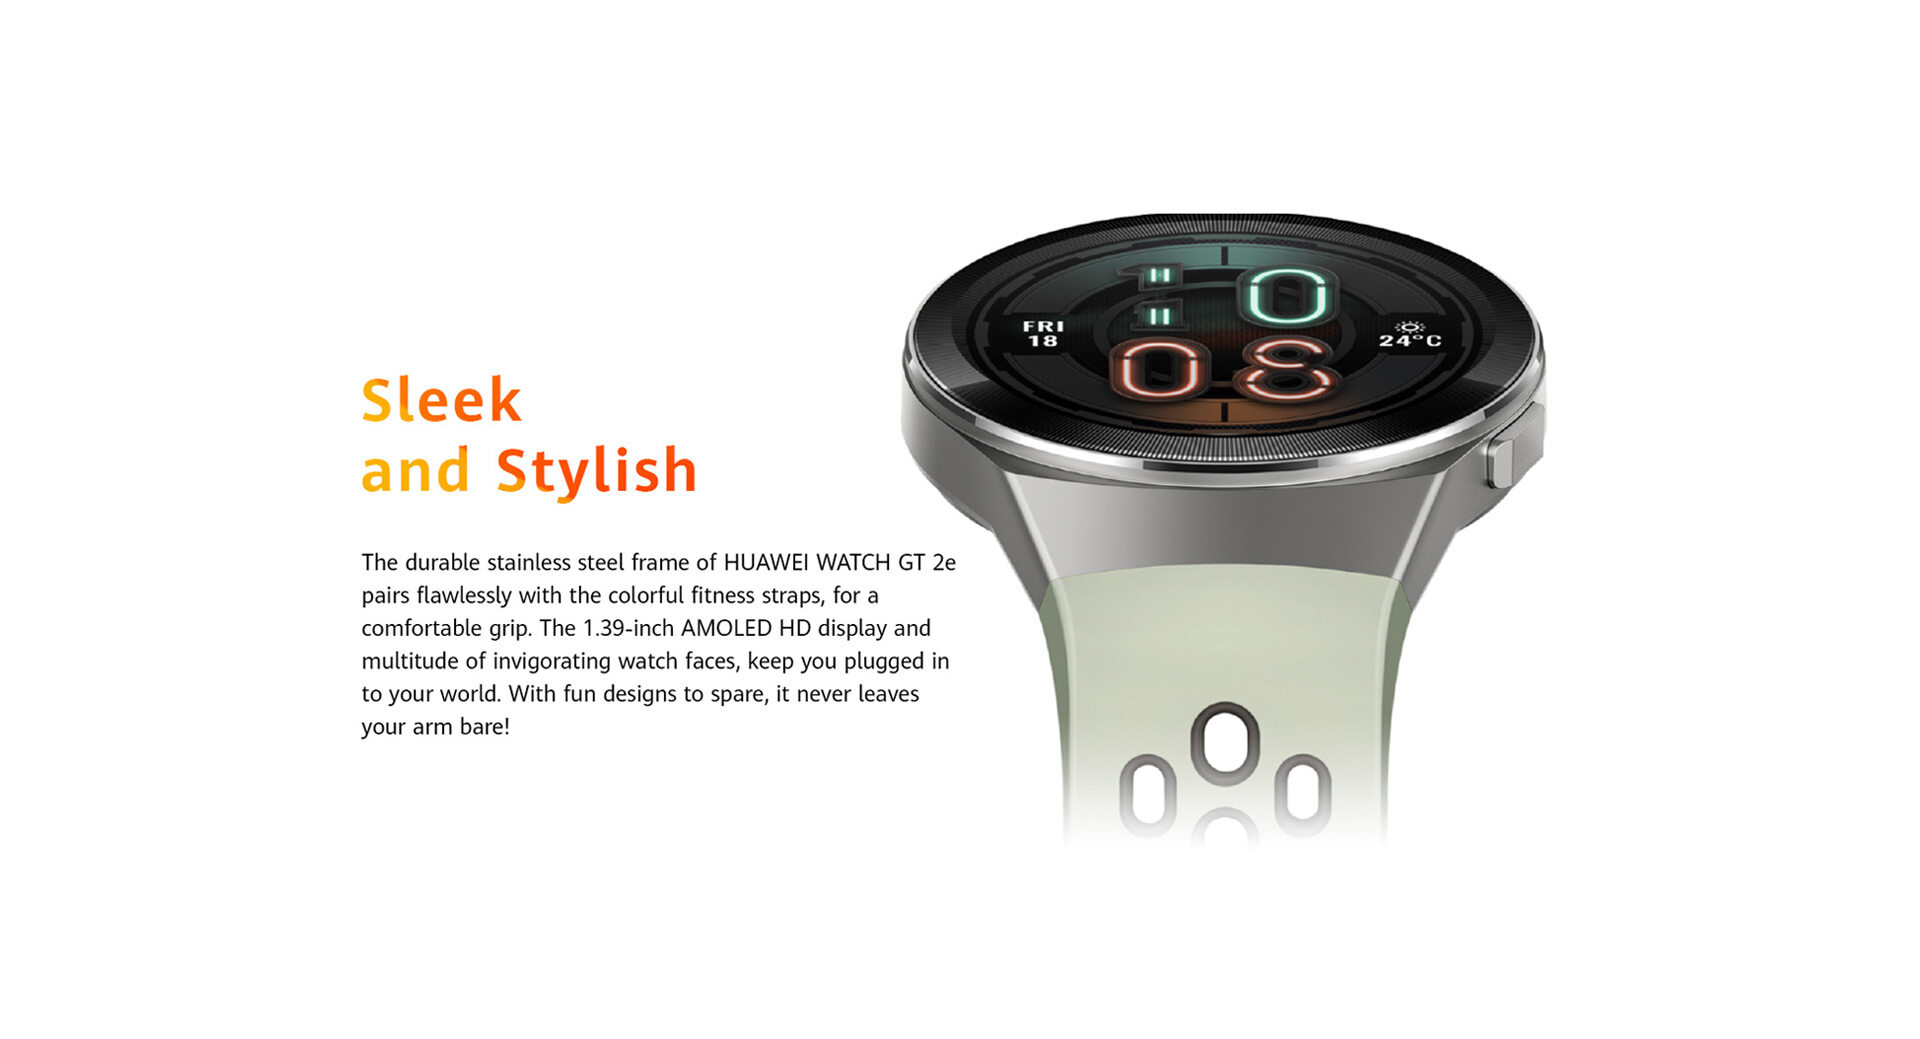 Huawei Watch Gt 2e Smartwatch